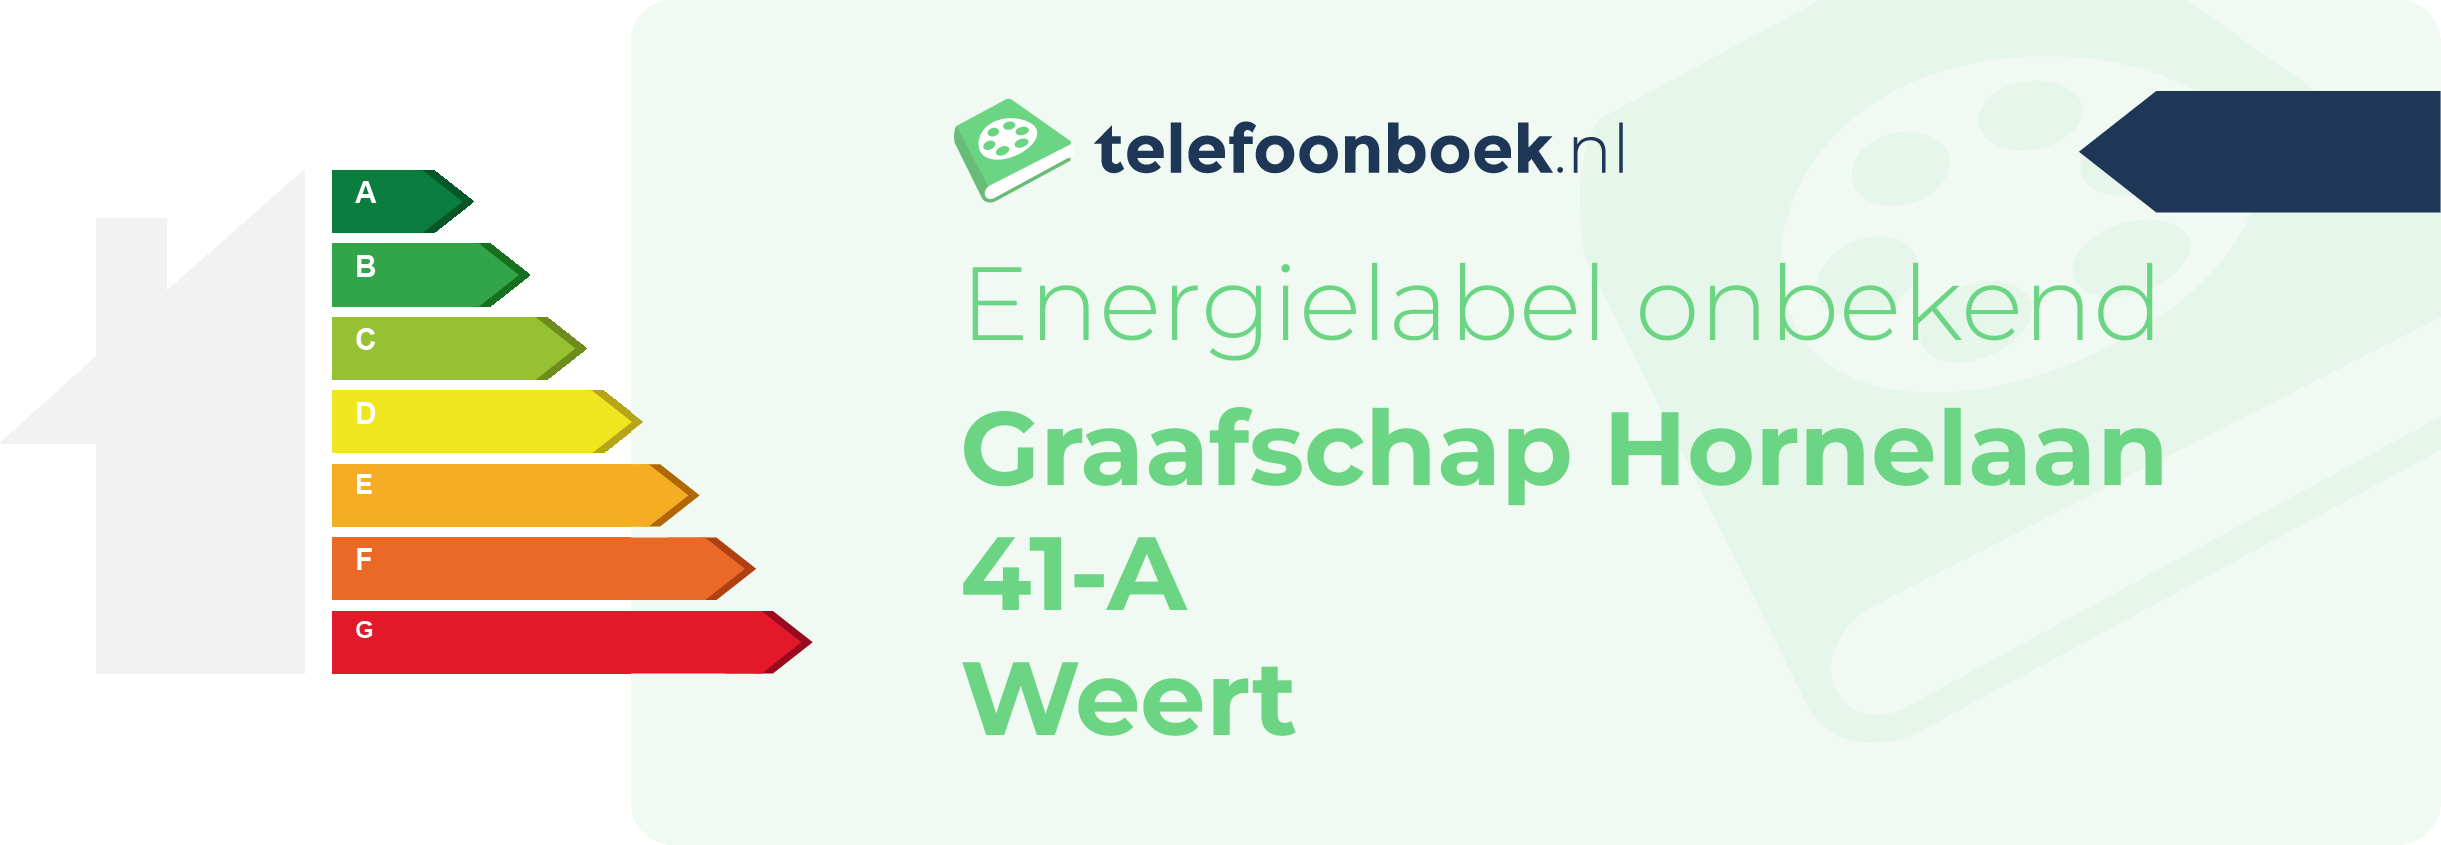 Energielabel Graafschap Hornelaan 41-A Weert